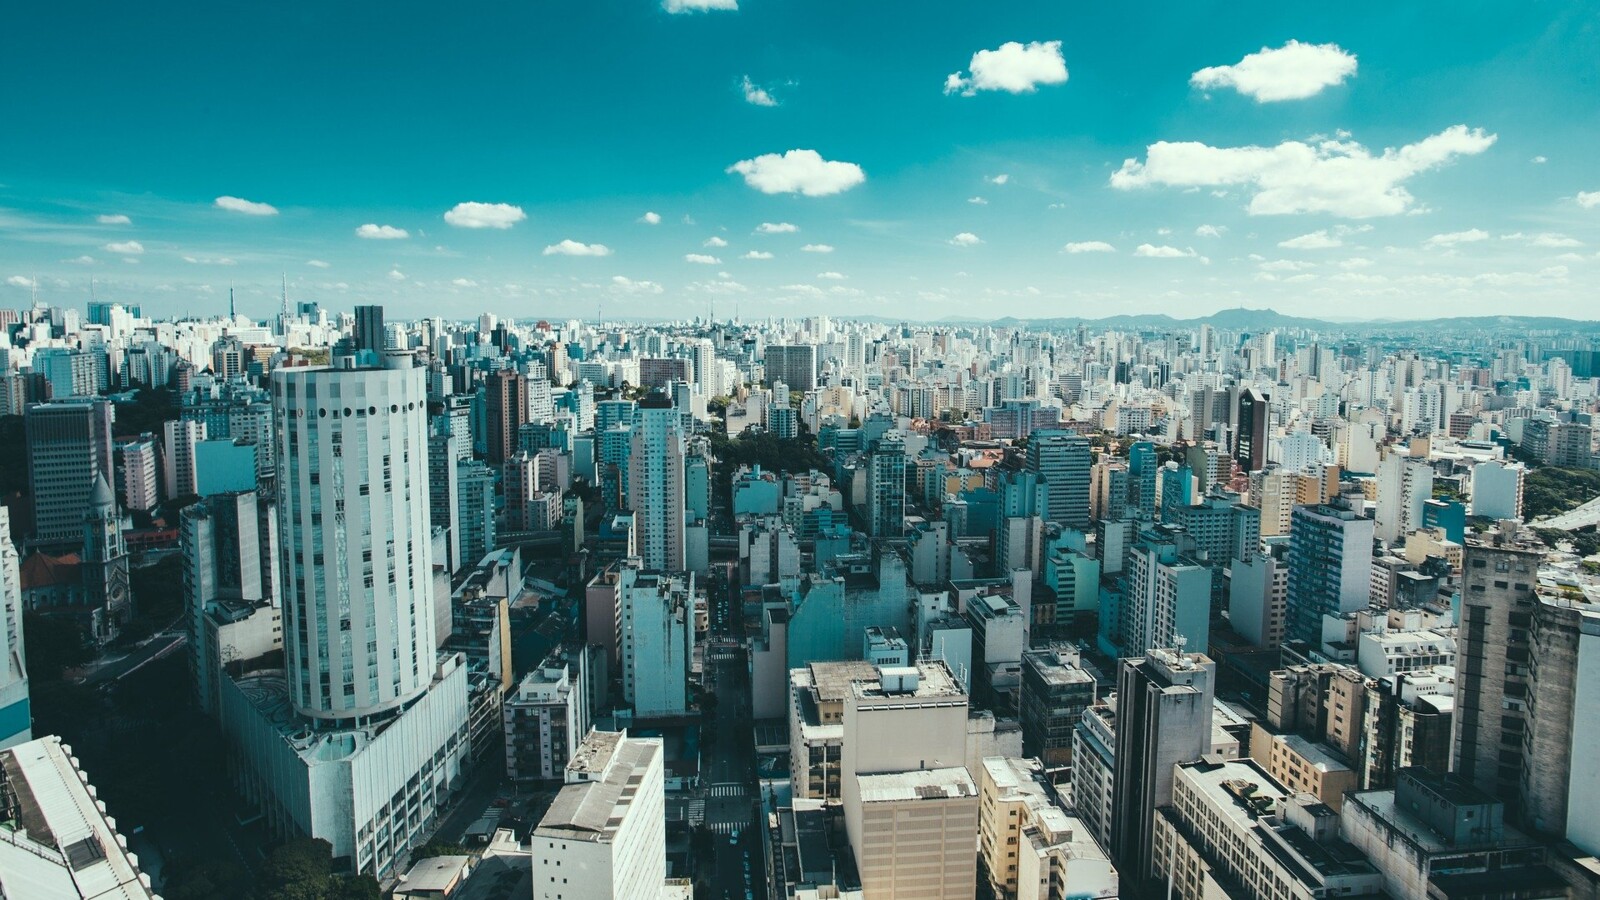 Cityscape of São Paulo, Brazil